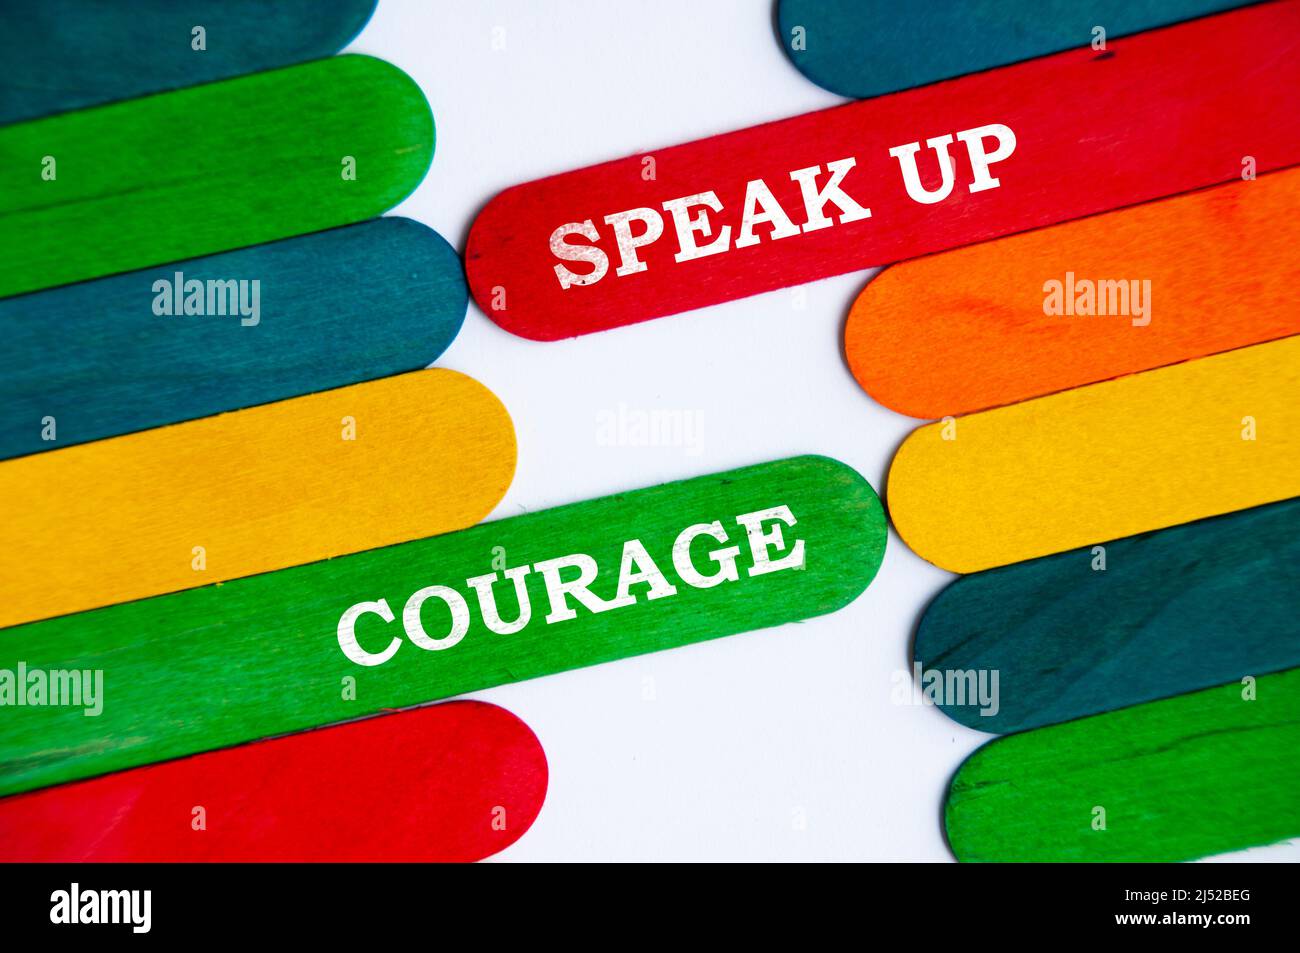 Parlate e testo di coraggio sul colorato bastone di legno - concetto di business Foto Stock